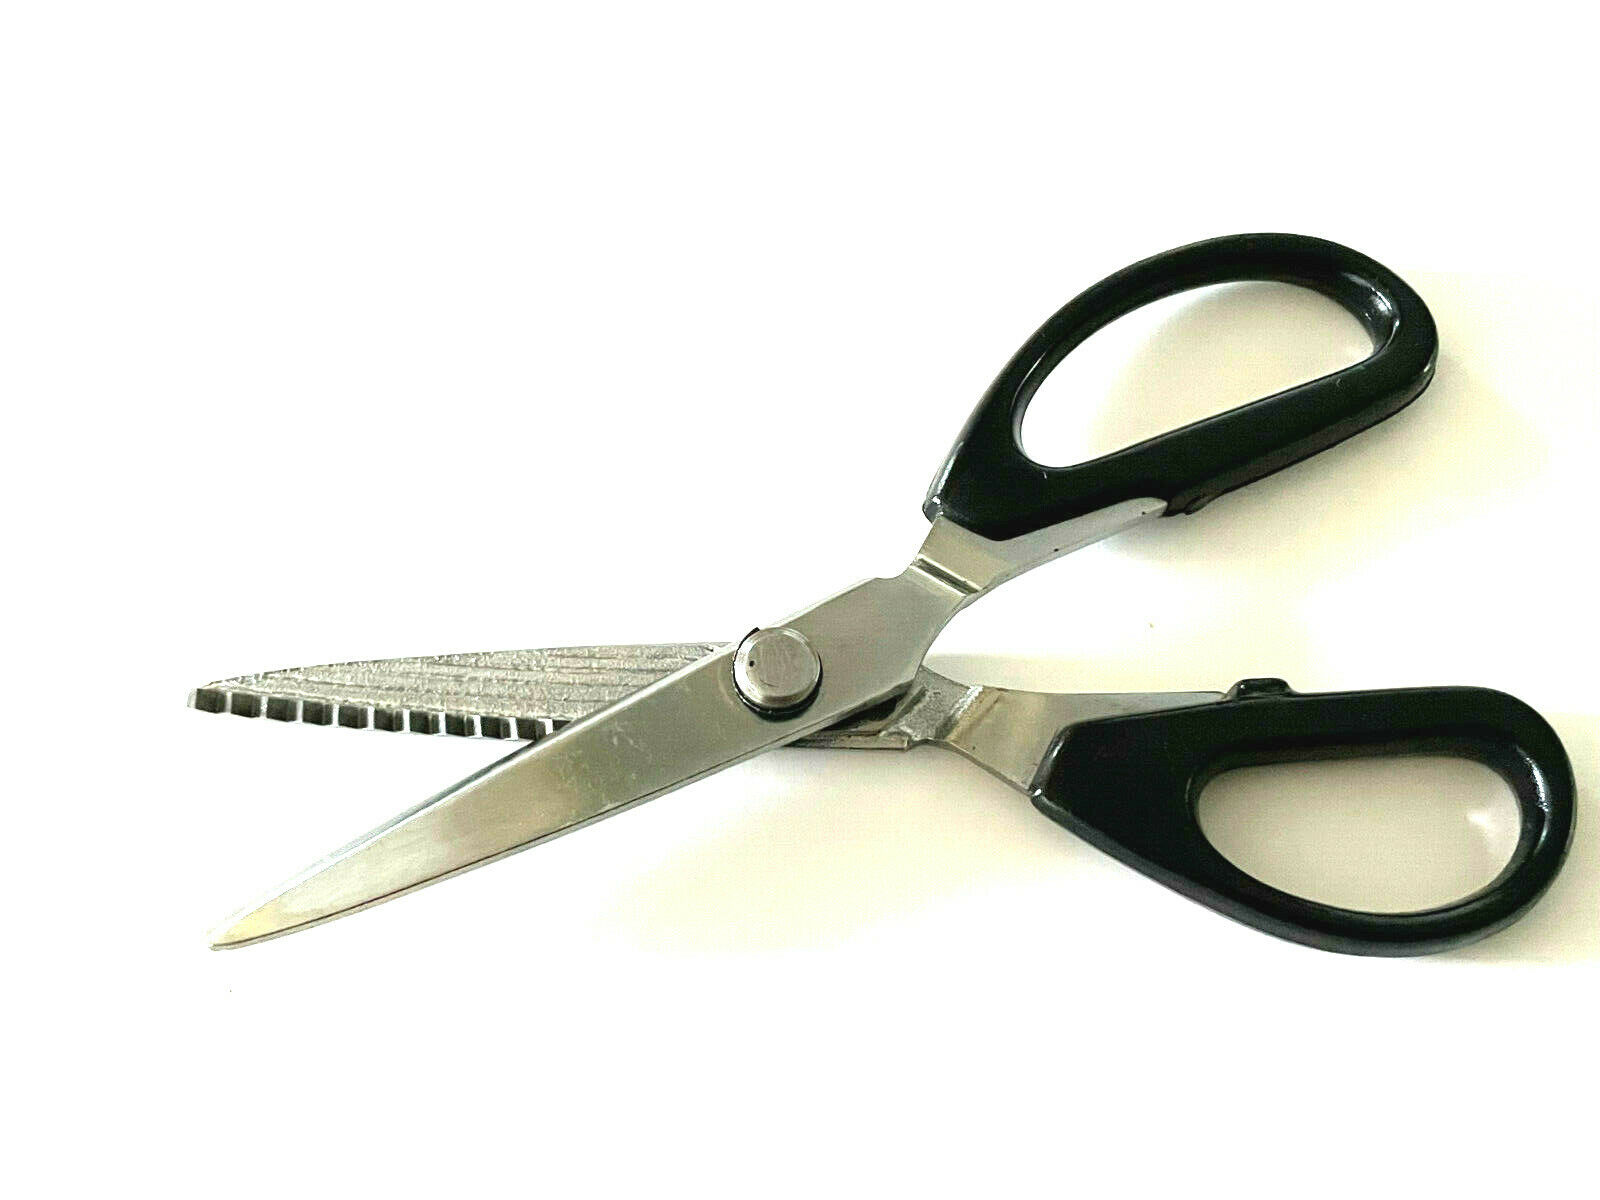 Zigzag scissors